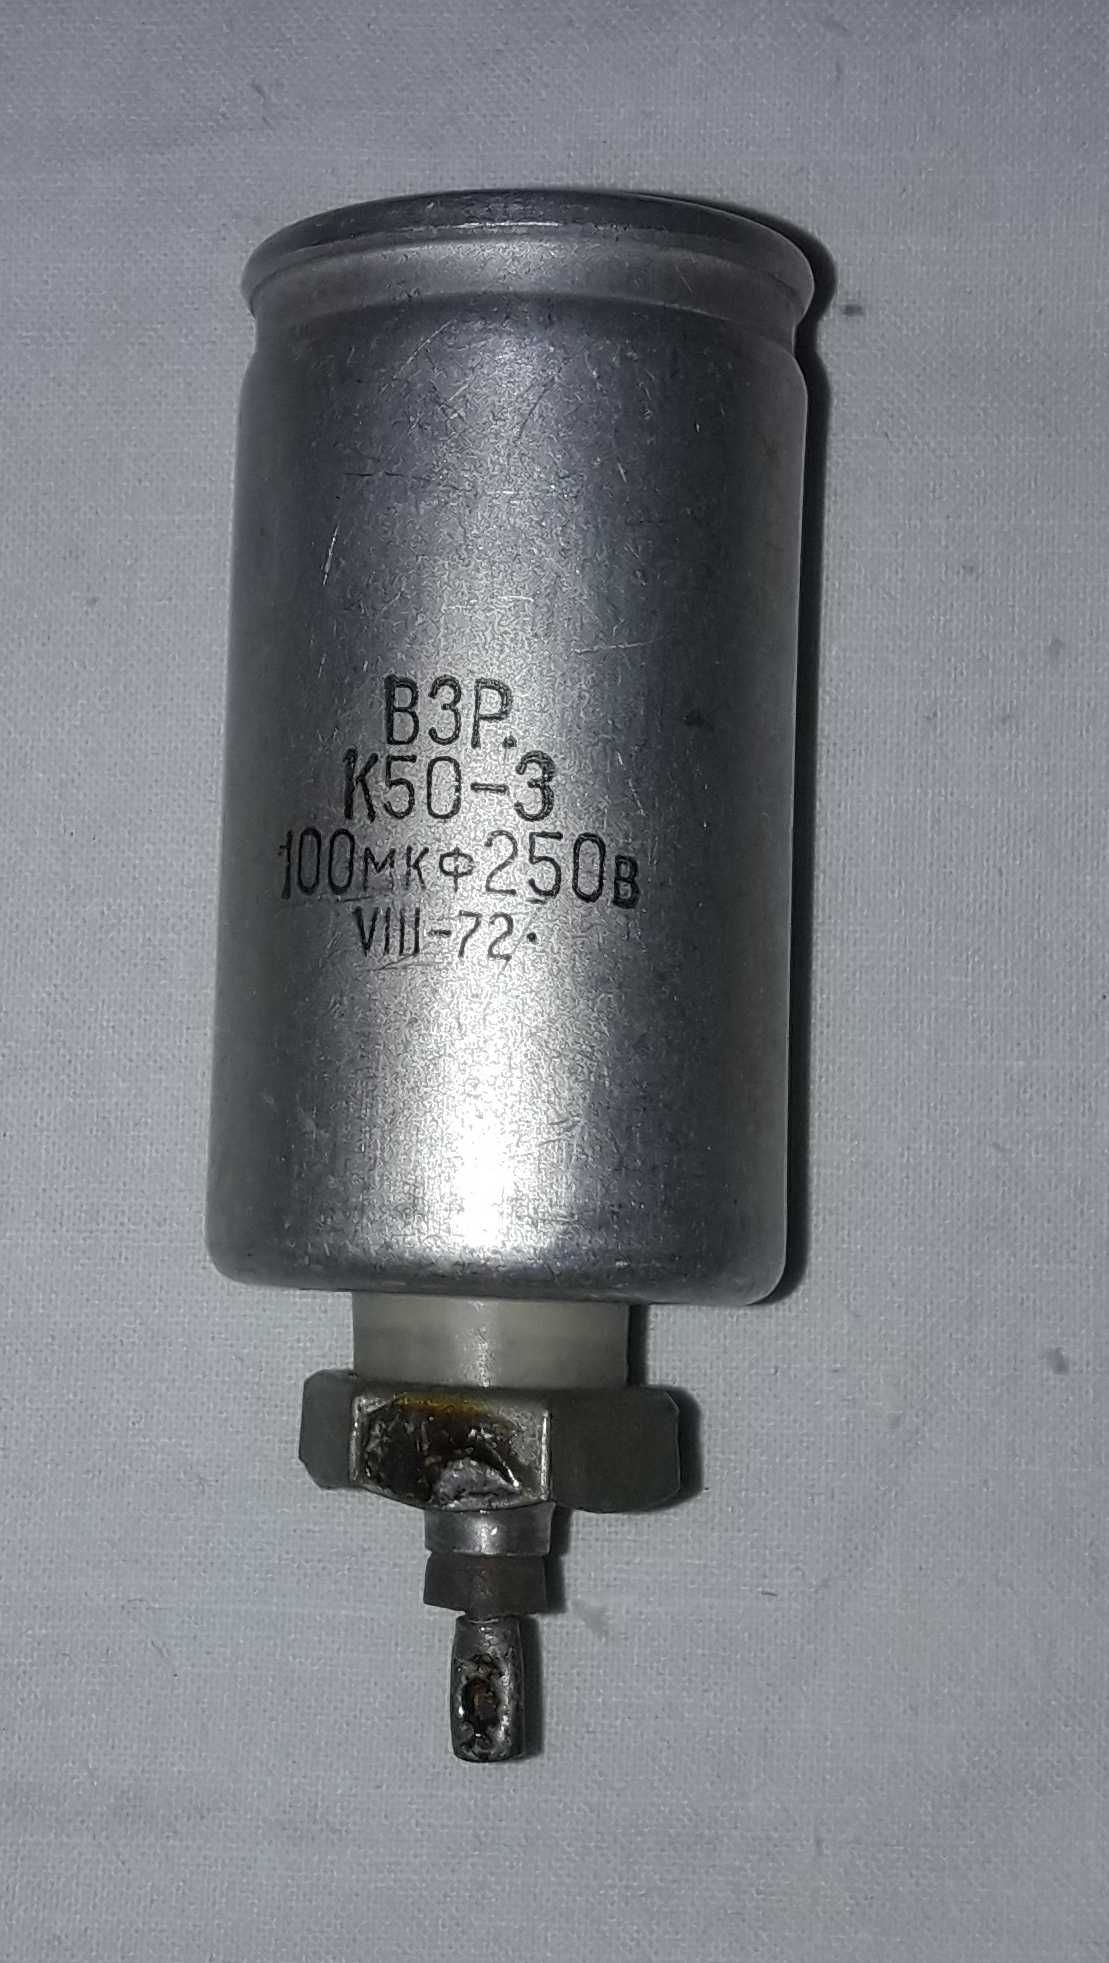 Конденсатор В3Р К50-3, 100мкФ 250В